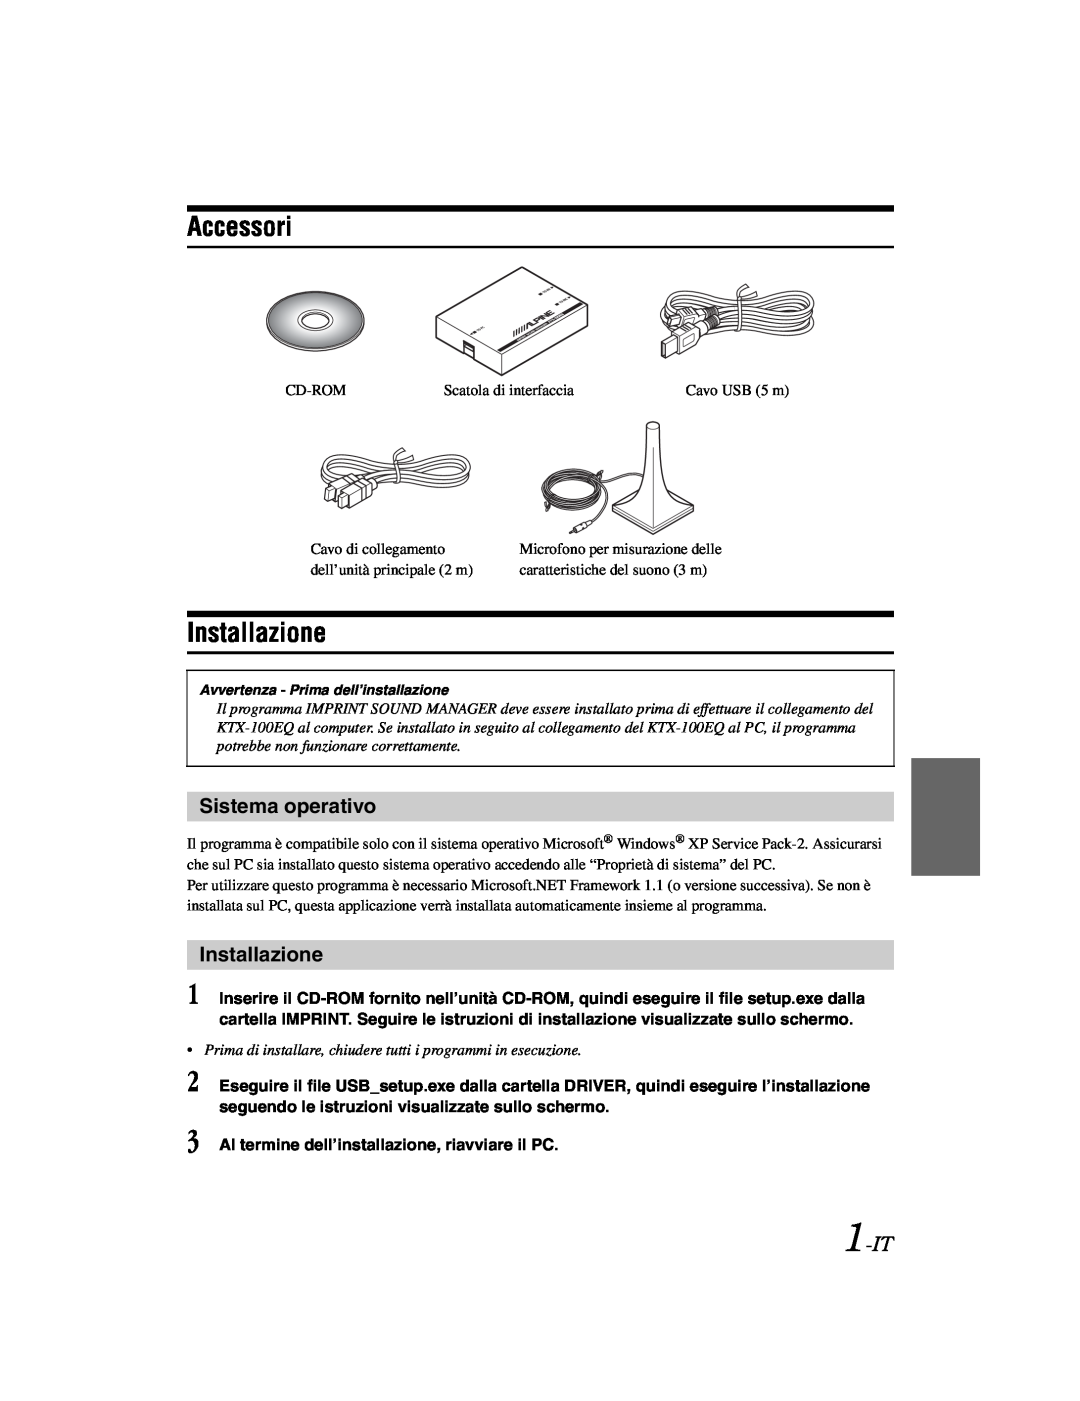 Alpine KTX-100EQ owner manual Accessori, Installazione, 1-IT, Sistema operativo 